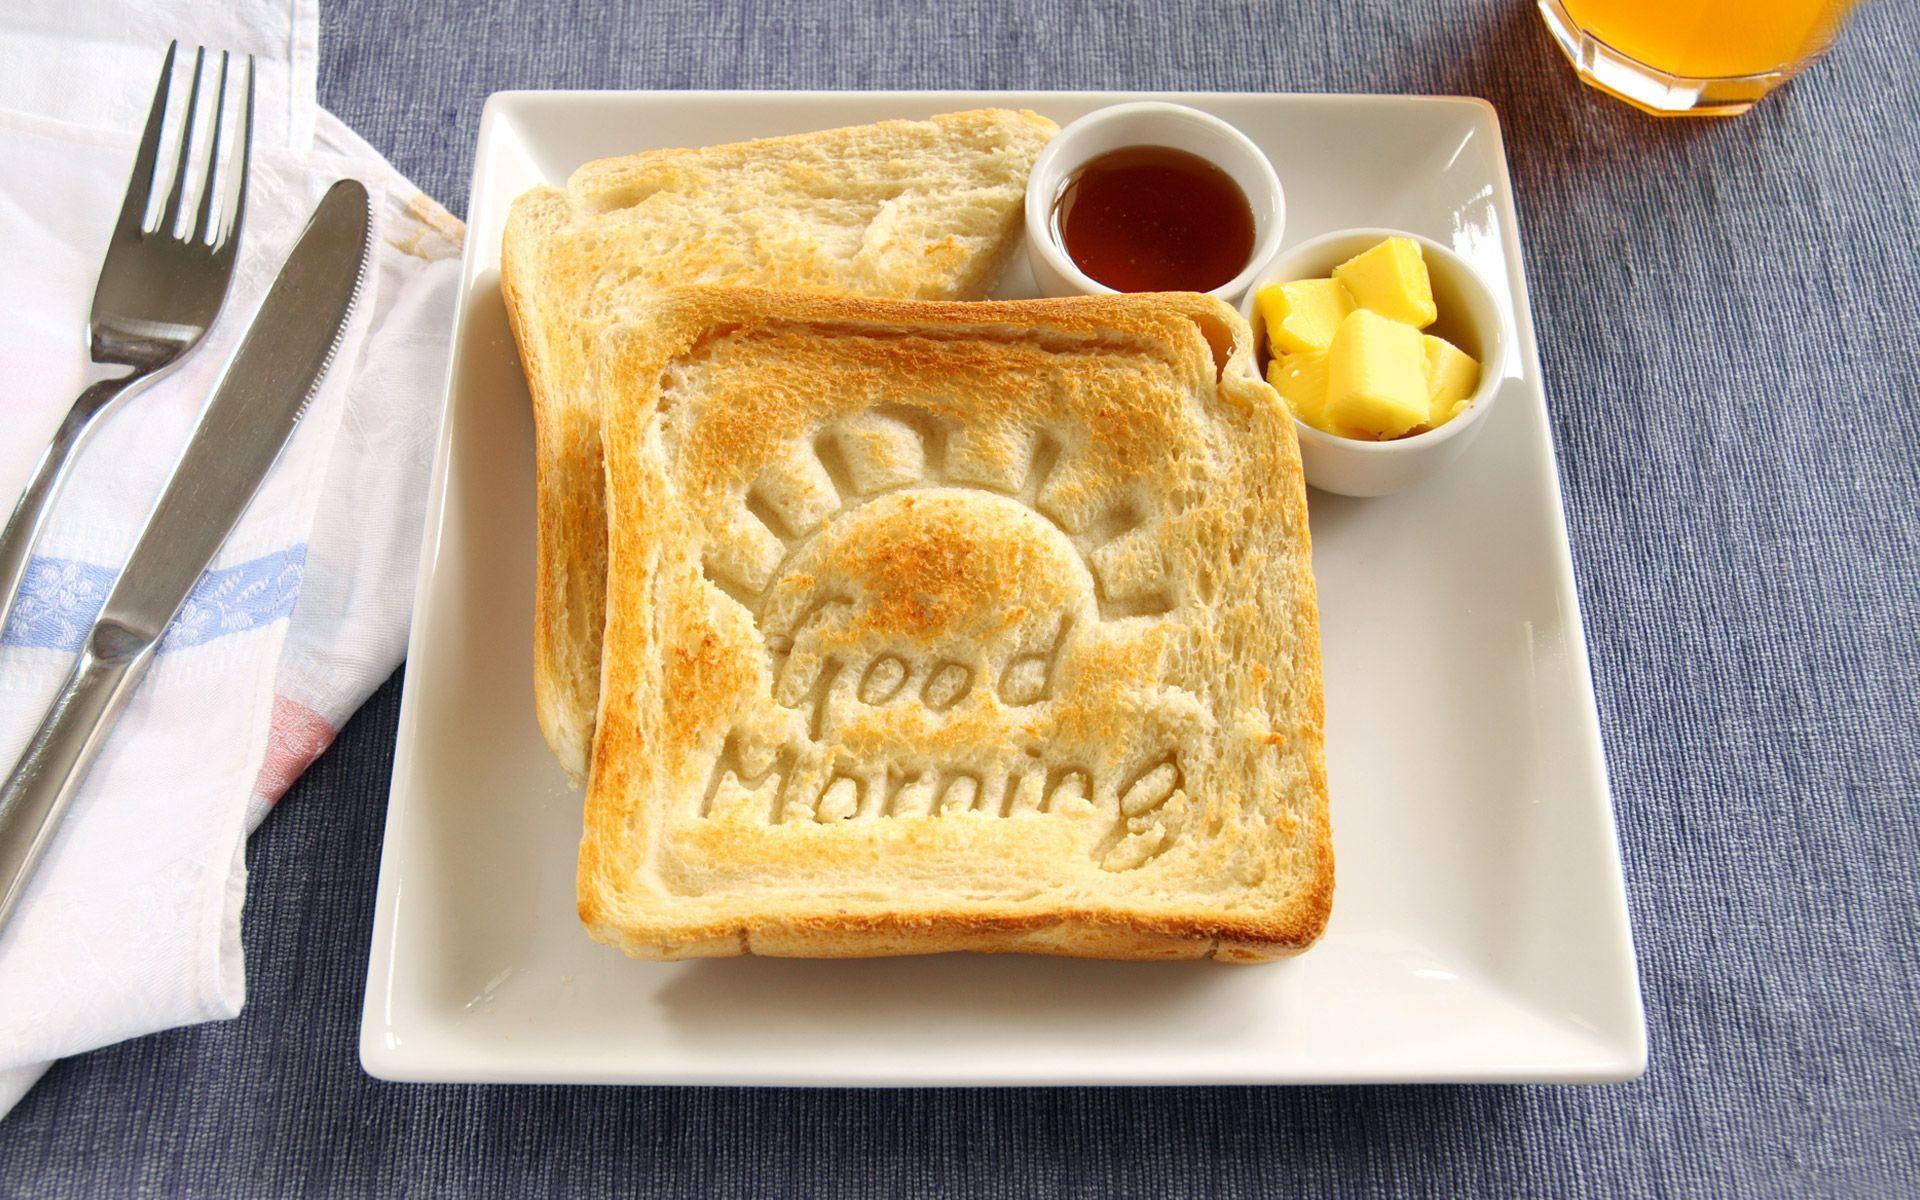 GoooooooooooodMorning! #Morningwish #breakfast #breadbutter